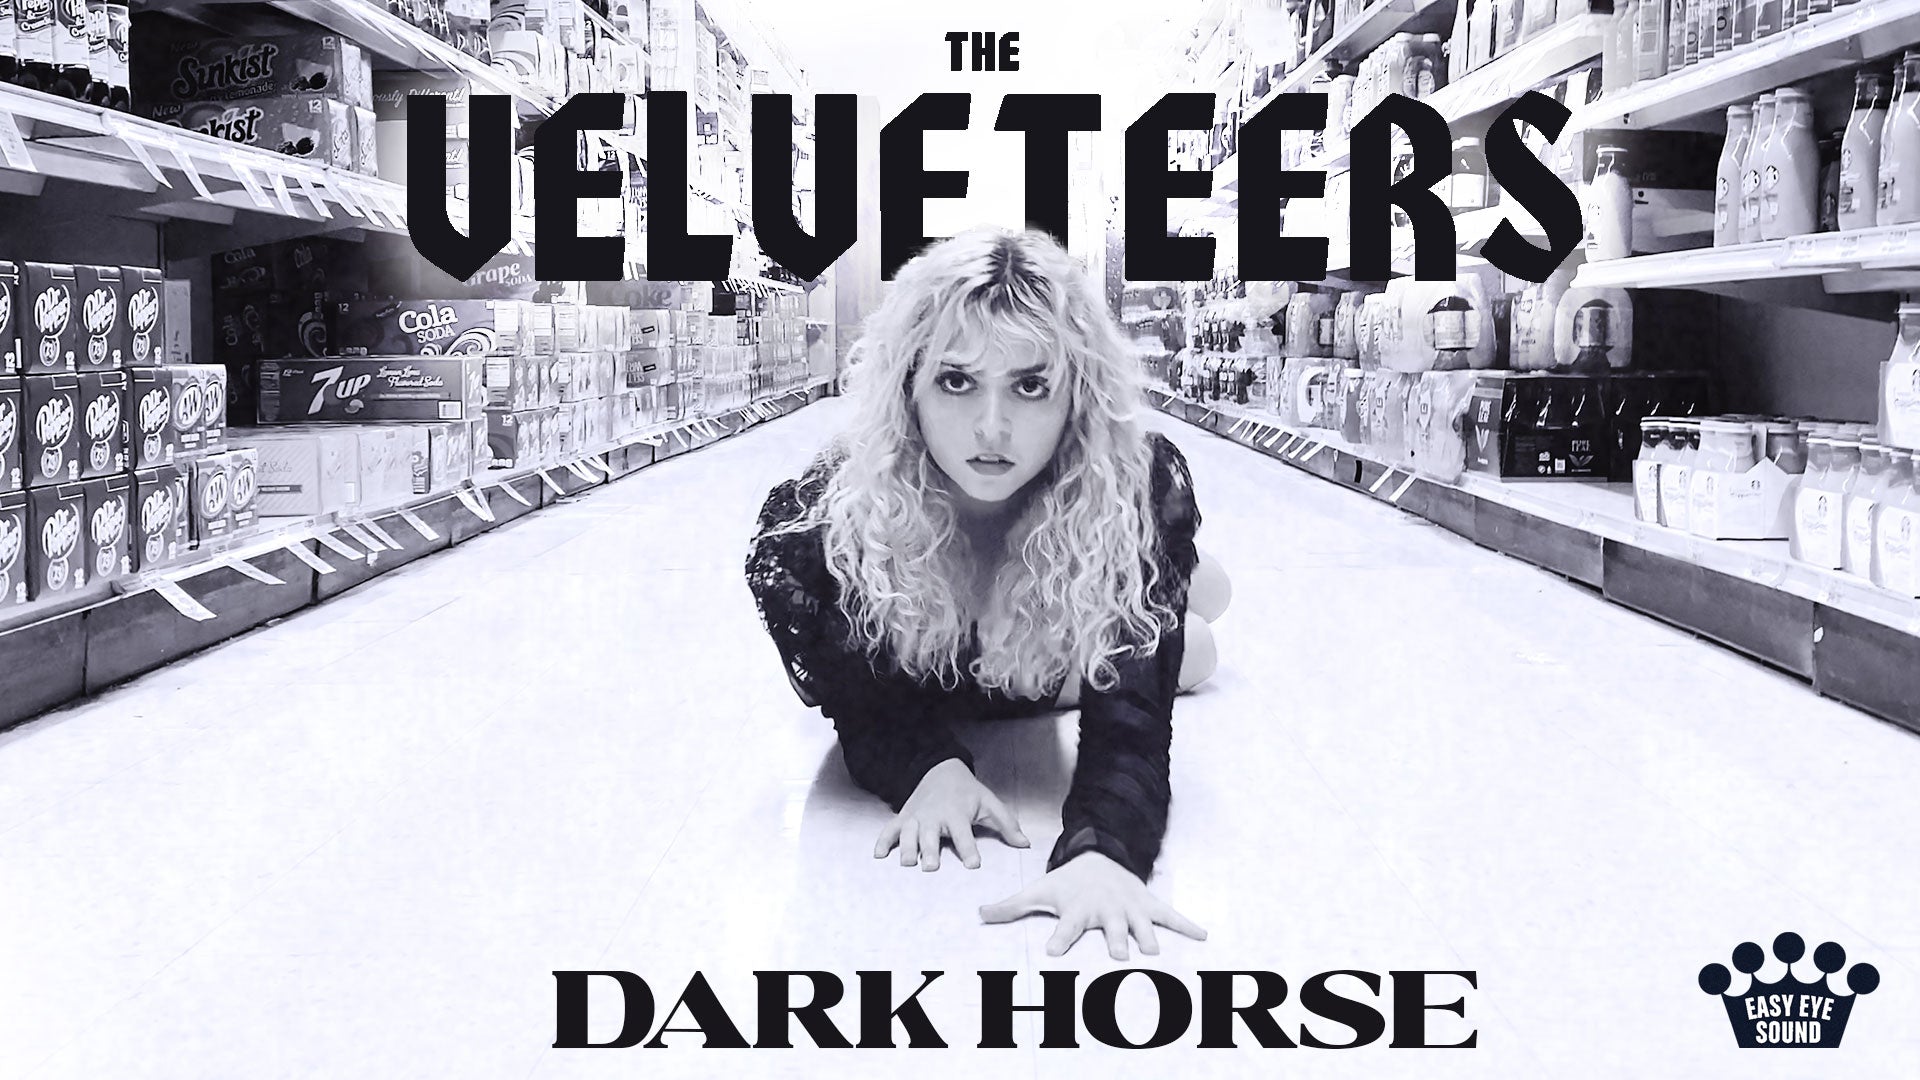 The Velveteers premiere new music video for "Dark Horse"